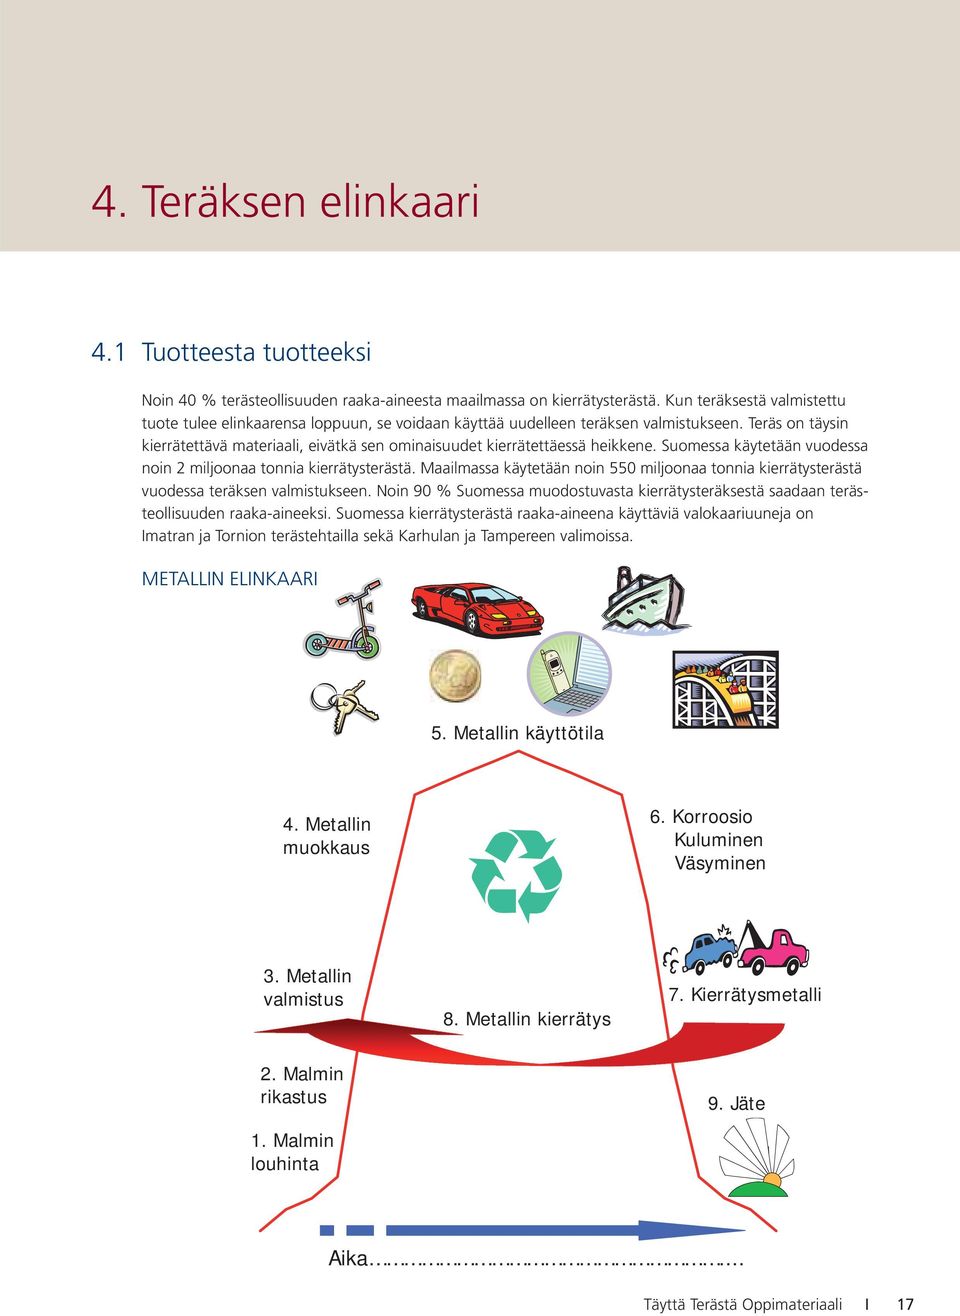 Teräs on täysin kierrätettävä materiaali, eivätkä sen ominaisuudet kierrätettäessä heikkene. Suomessa käytetään vuodessa noin 2 miljoonaa tonnia kierrätysterästä.